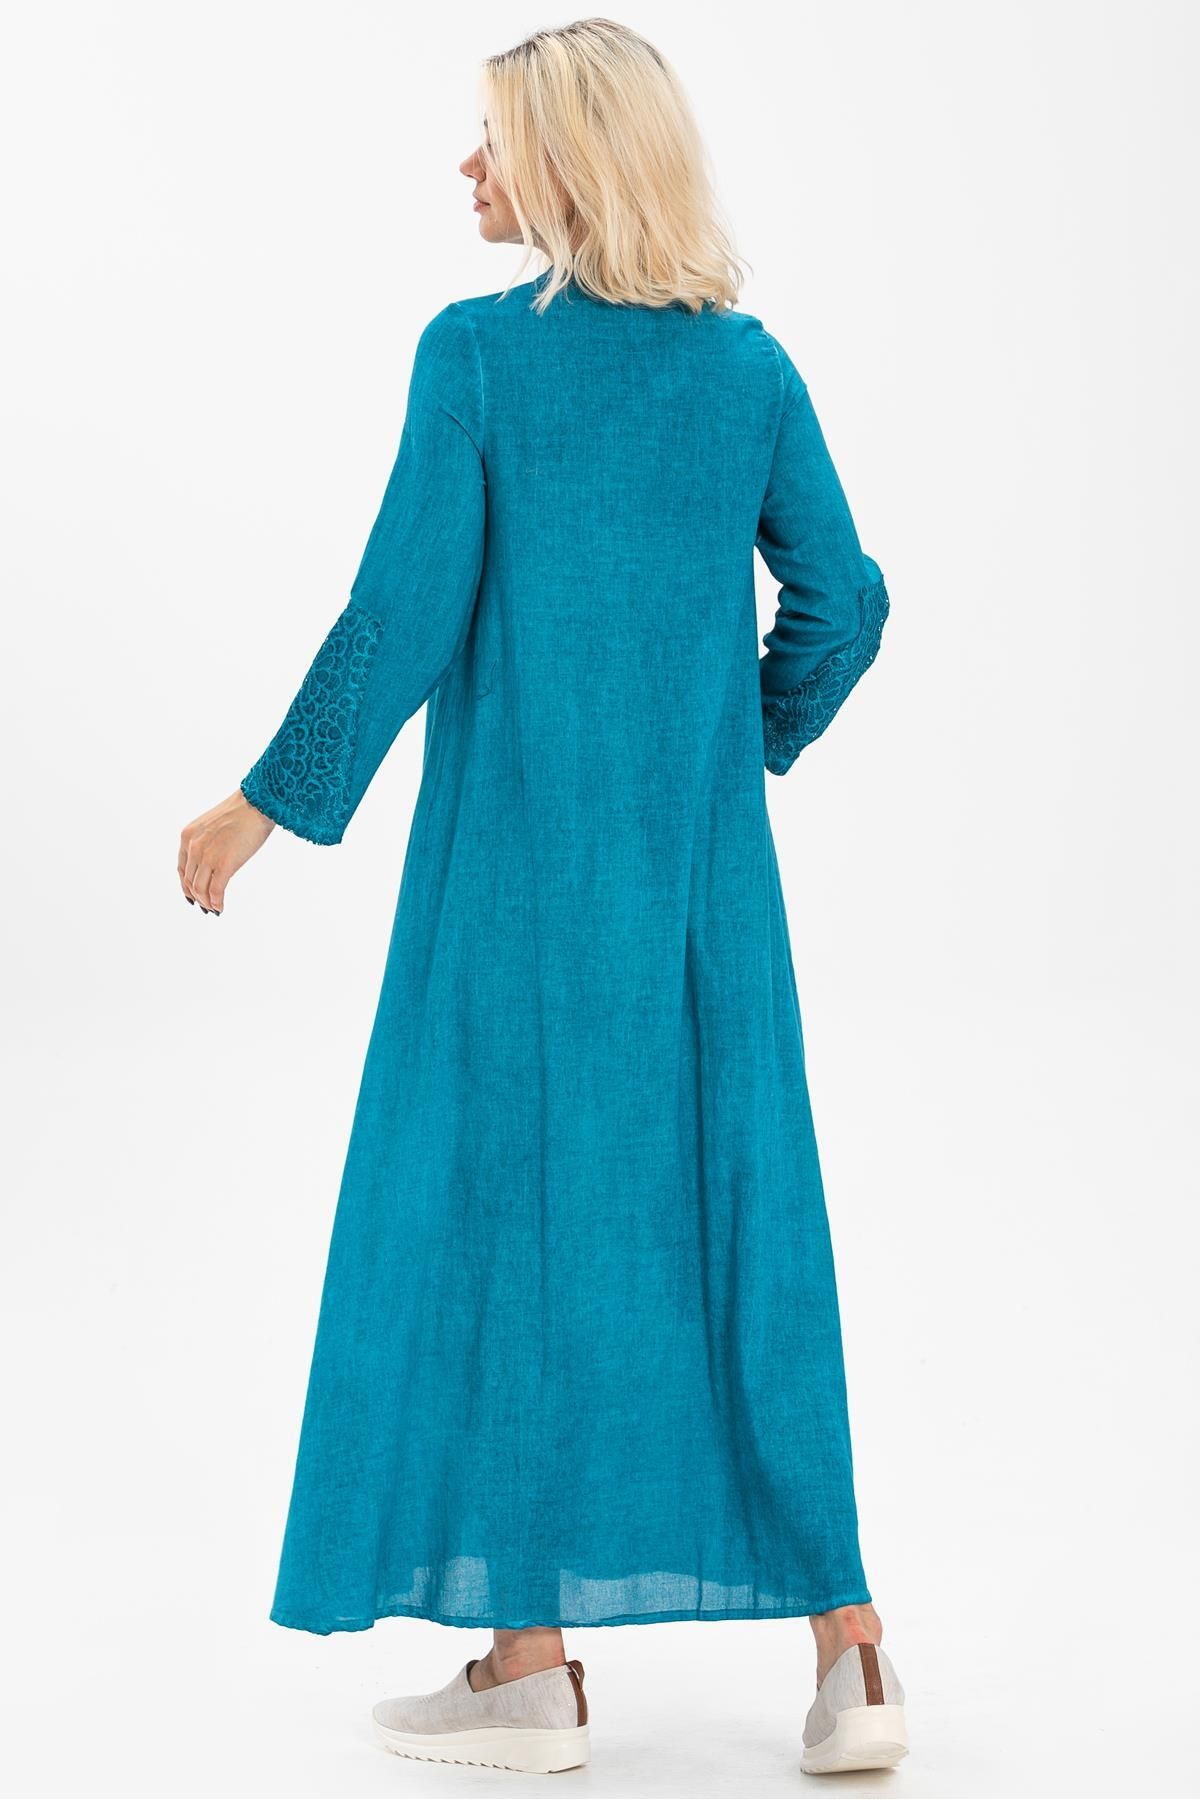 Eliş Şile Bezi لباس آستین بلند شیله پارچه زمردی سایز پلاس دکمه دار فیروزه ای Trkz